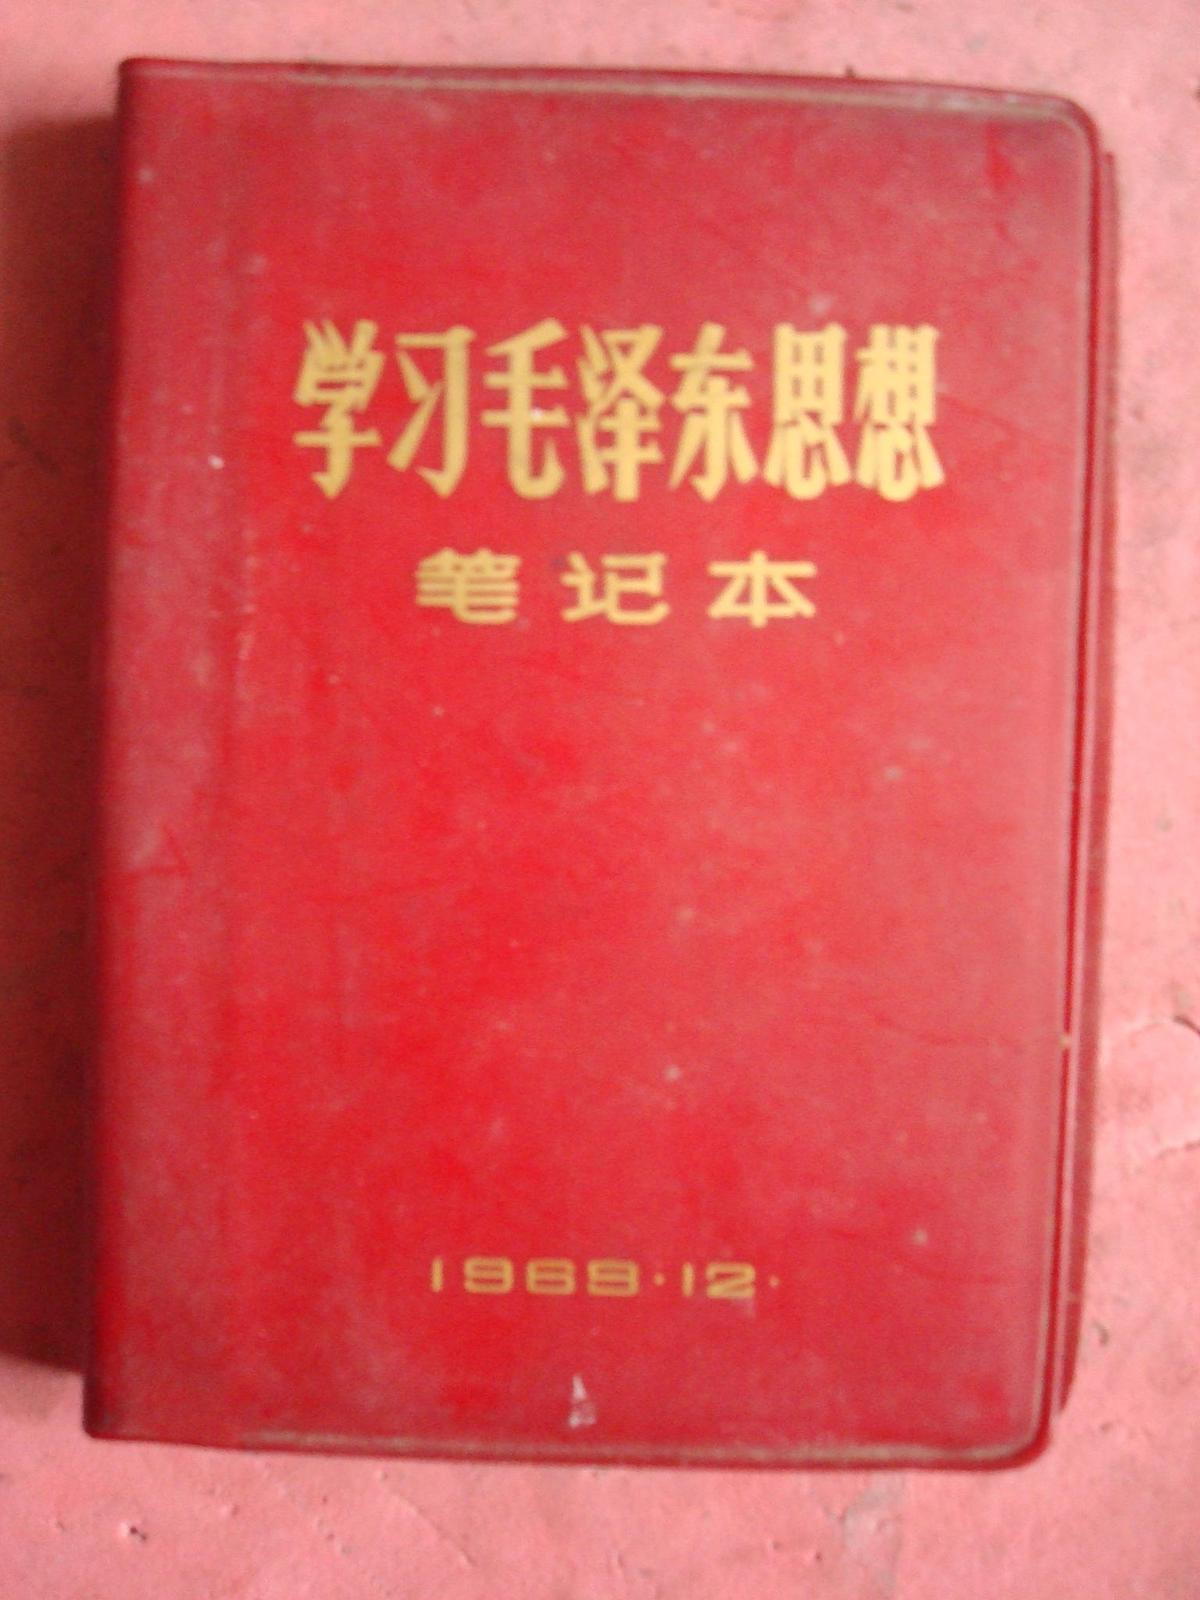 **红塑本《学习毛泽东思想》笔记本【未用过】【保密委员会1969.12】